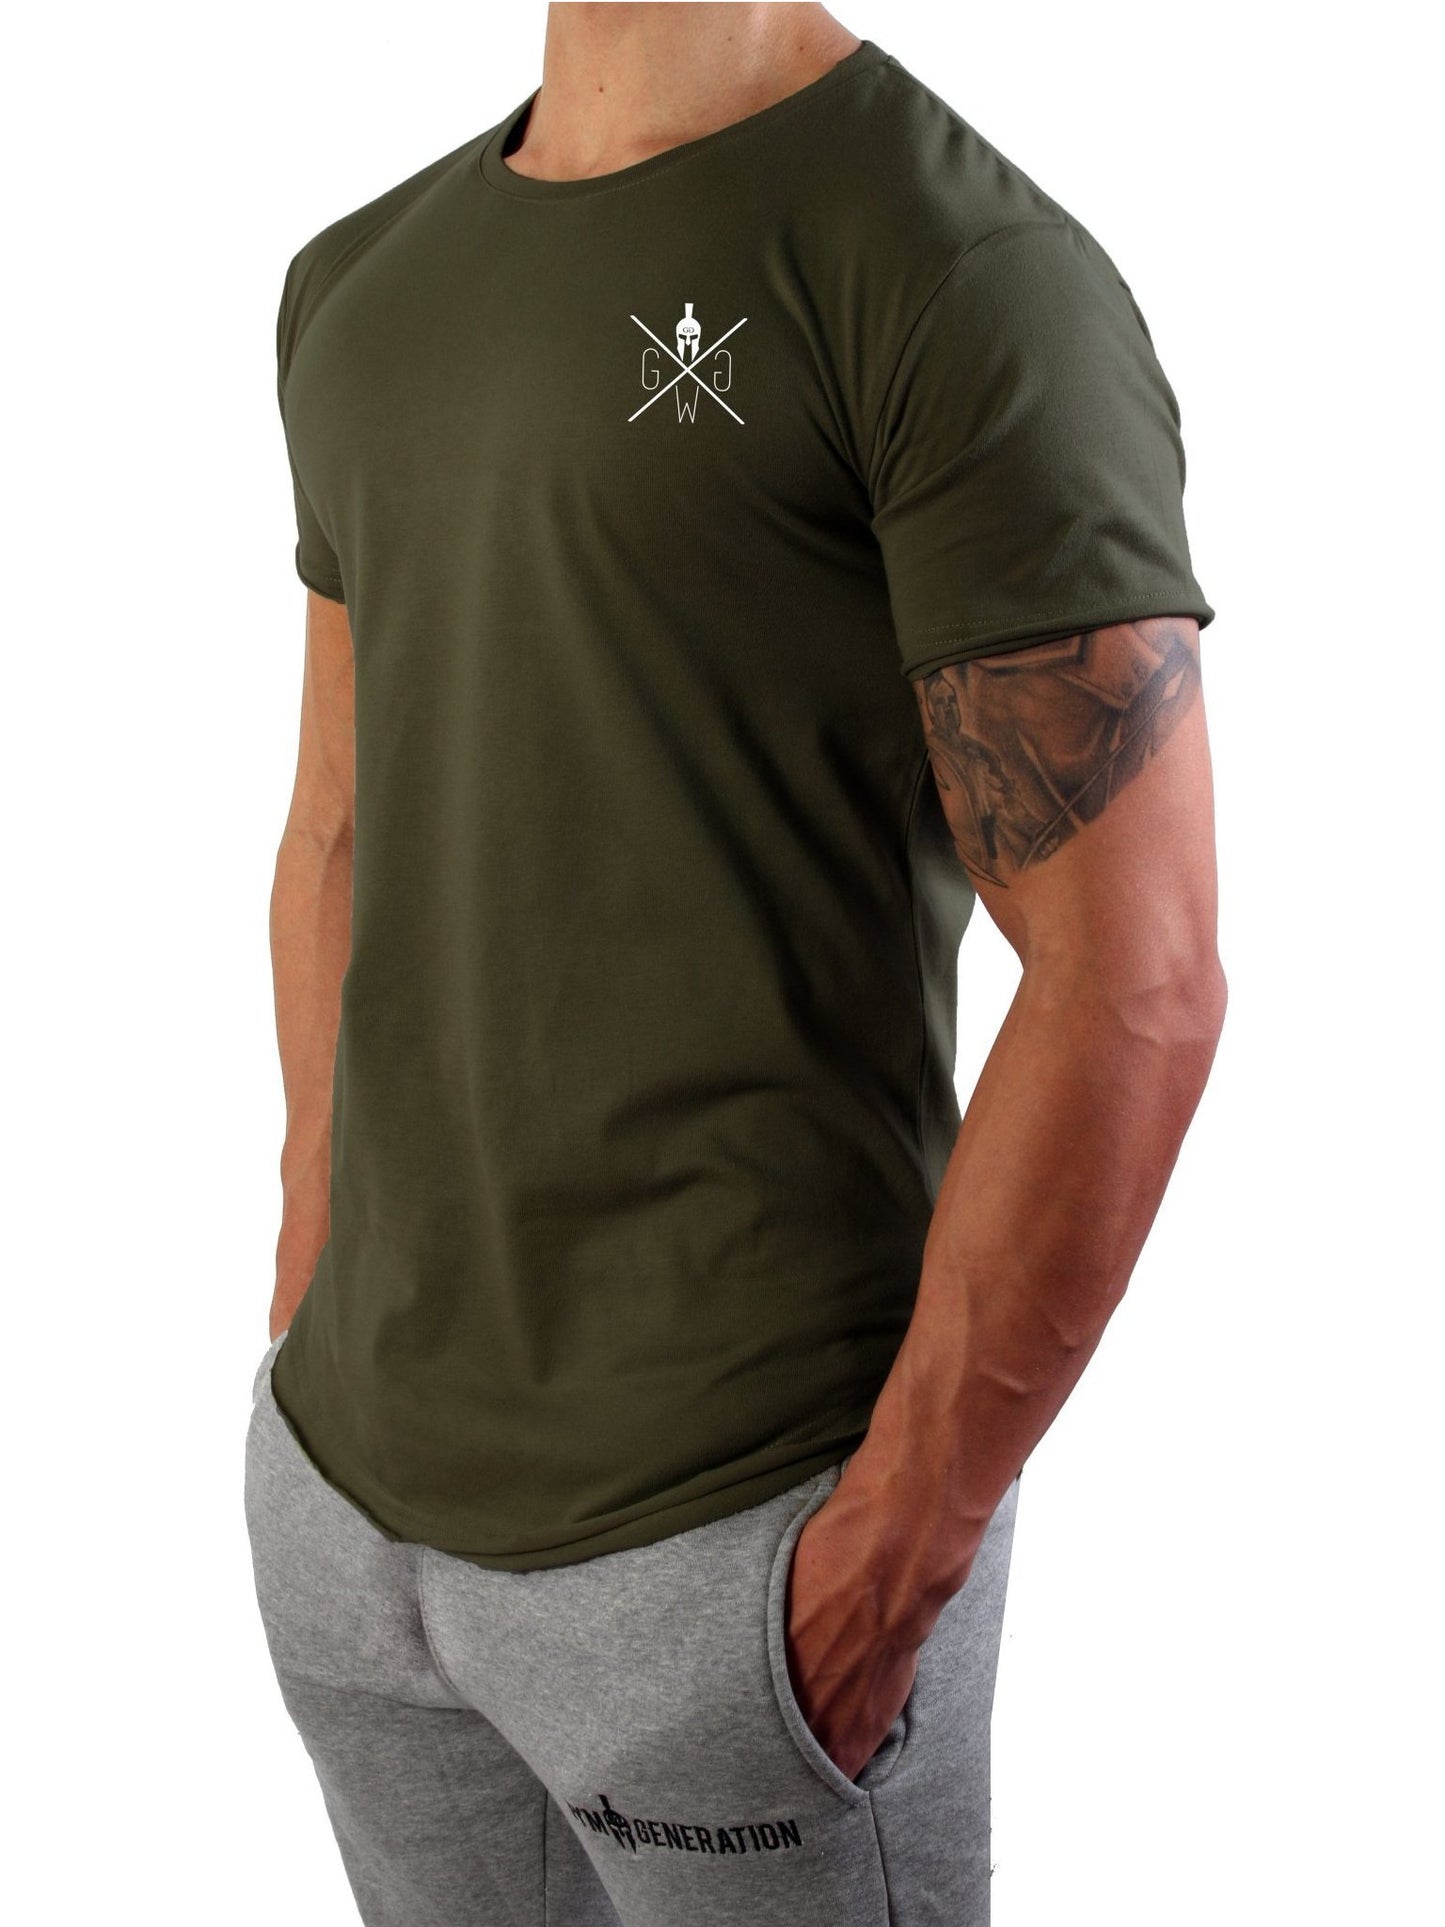 Vielseitiges Warrior T-Shirt von Gym Generation, perfekt kombinierbar mit Jeans oder Shorts für lässige Looks.